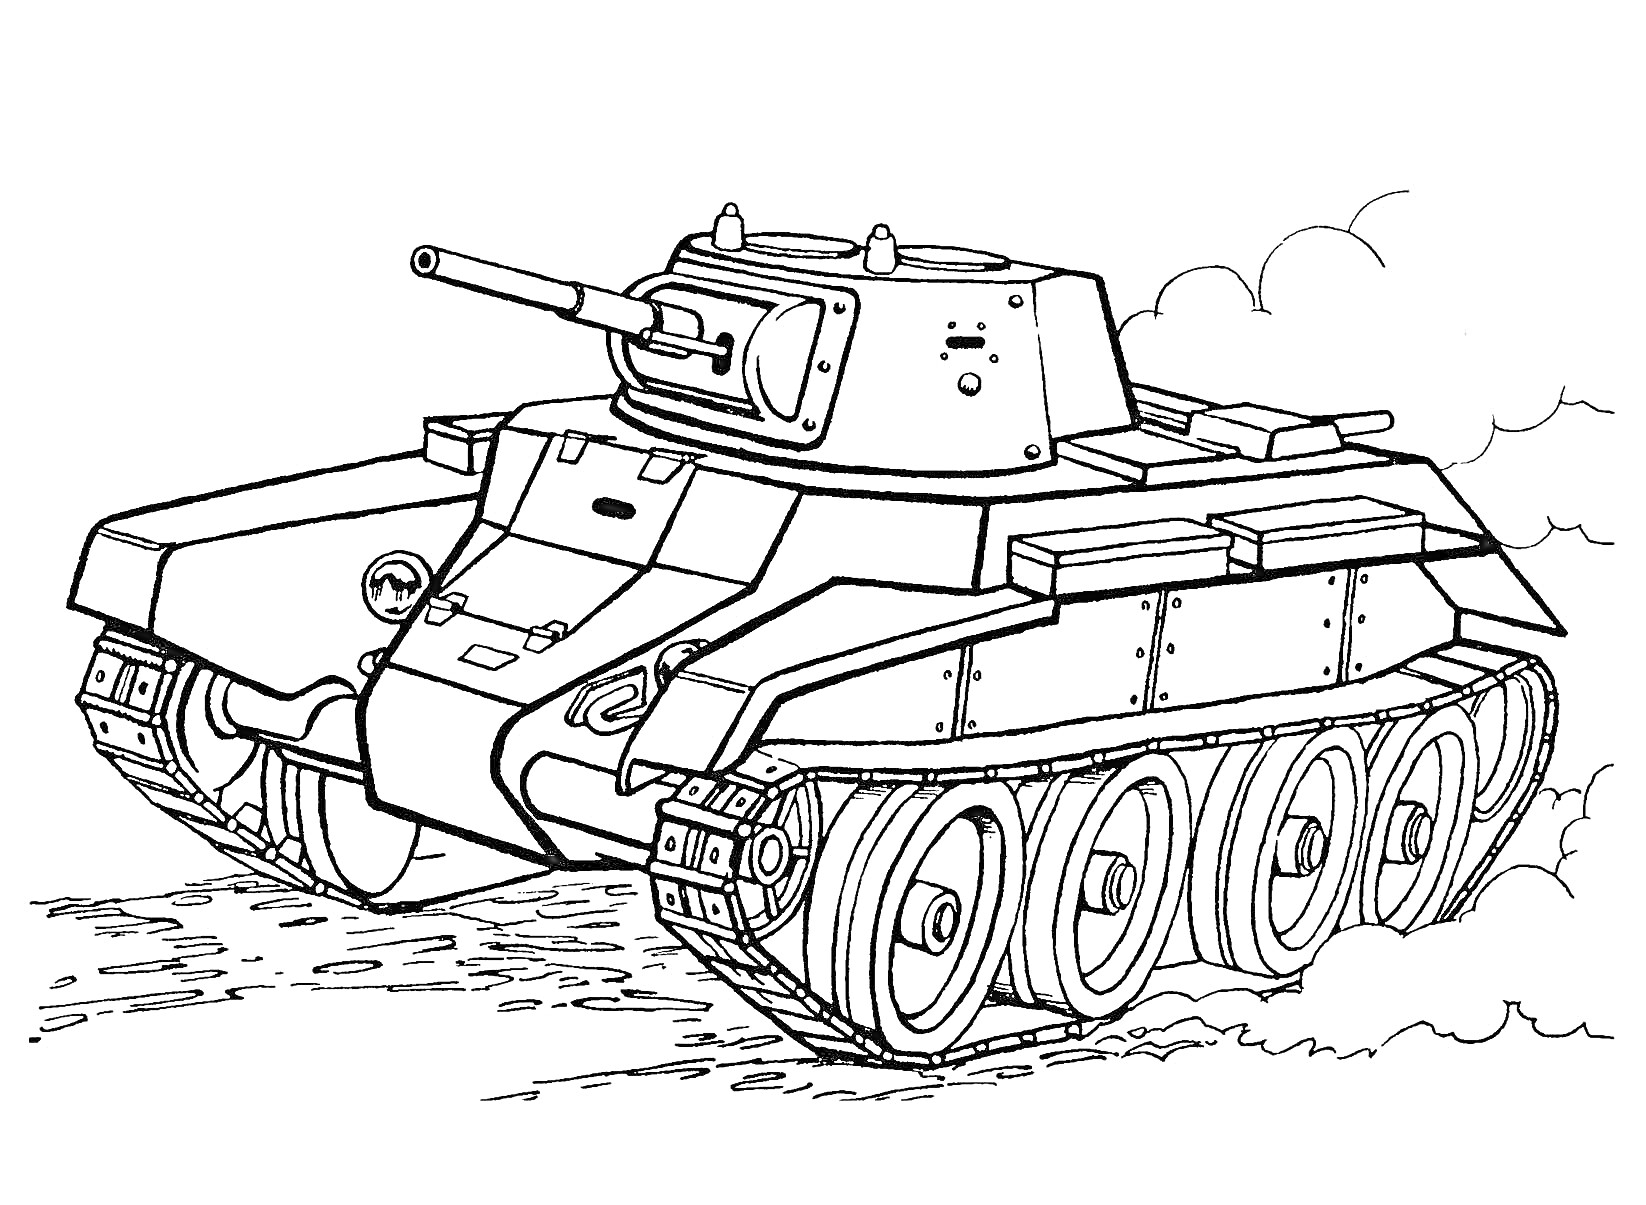 Раскраска Танковая раскраска с изображением танка на грунтовой дороге, со всеми траками и гусеницами, дующей дуло и элементы брони